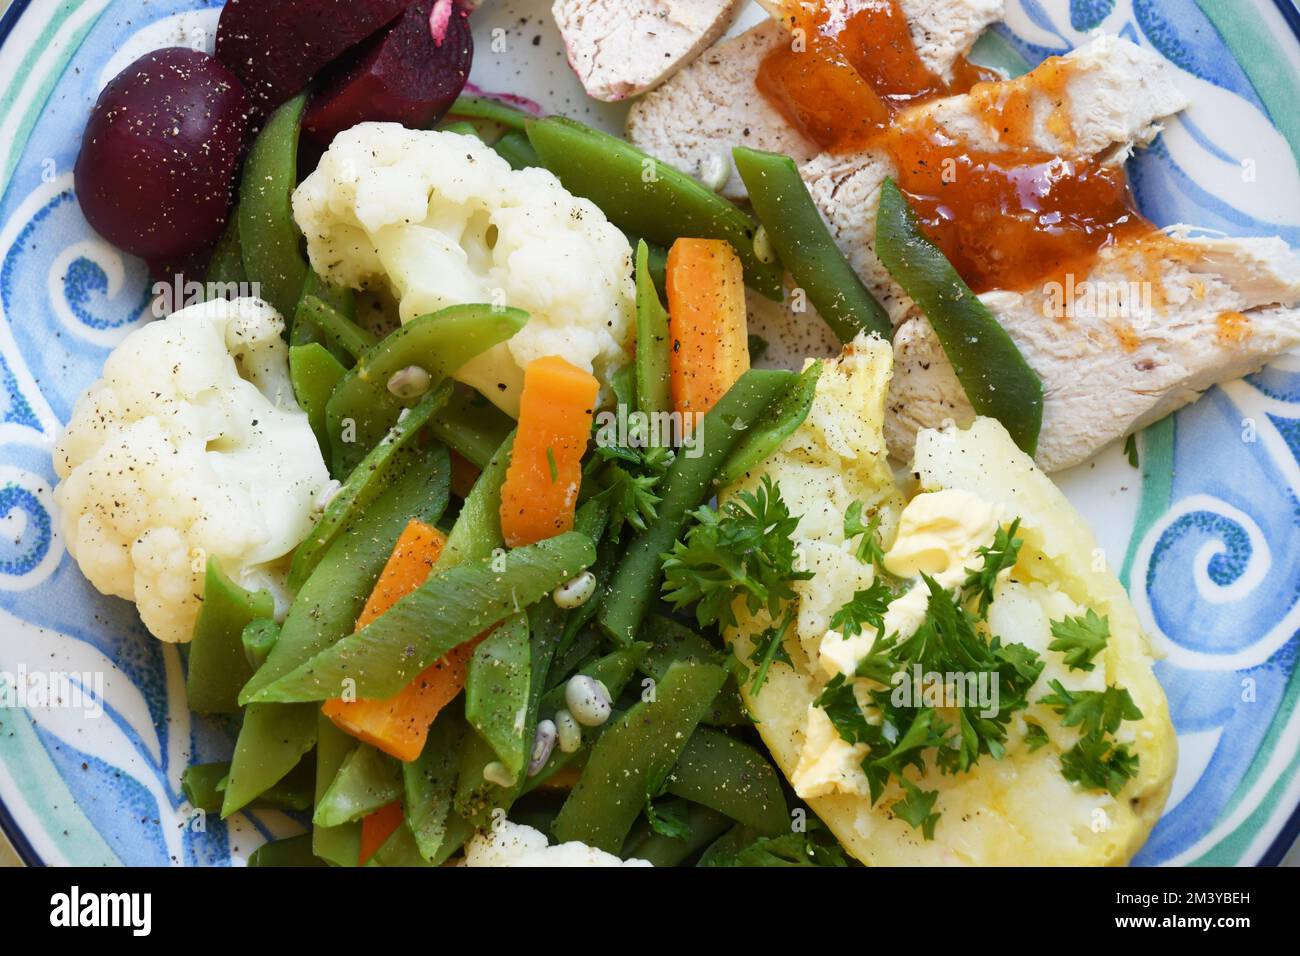 Un simple repas nourrissant de poulet froid habillé de chutney de mangue, de pomme de terre de veste et de légumes frais composés de haricots verts, carottes, chou-fleur Banque D'Images